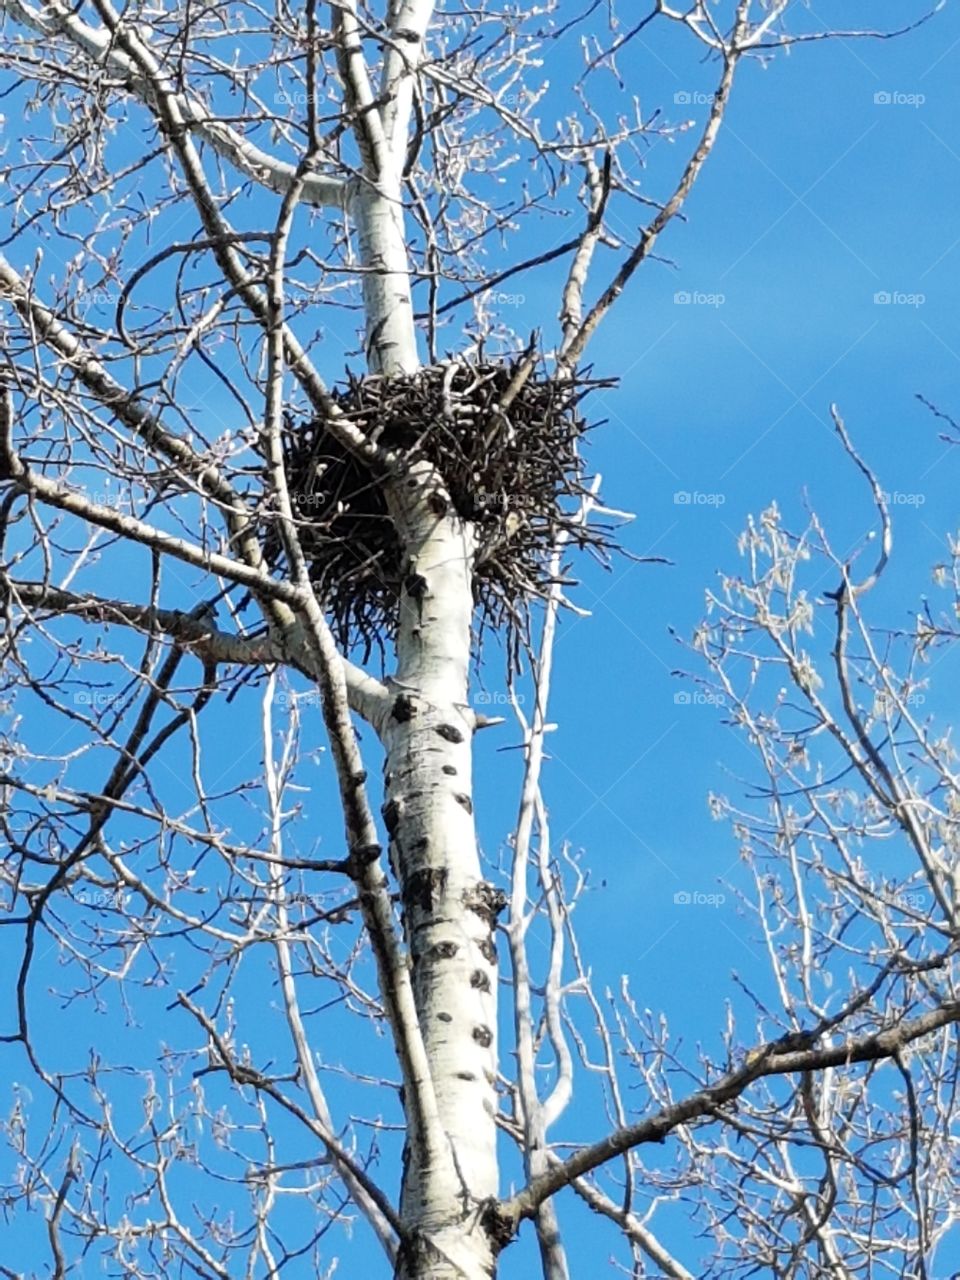 Falcon nest.